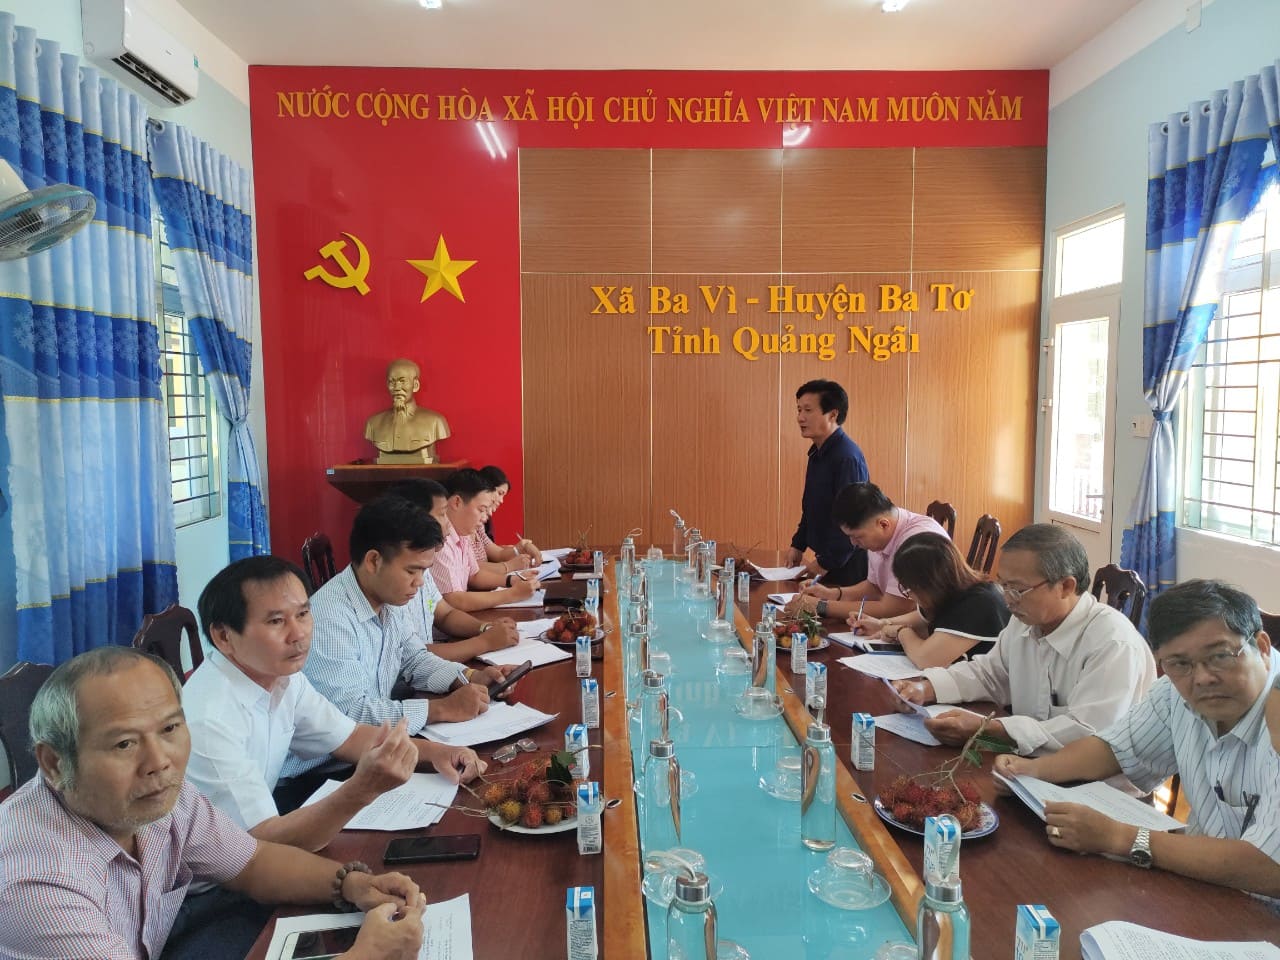 Ban chỉ đạo phát triển Kinh tế tập thể tỉnh Quảng Ngãi làm việc với UBND xã Ba Vì